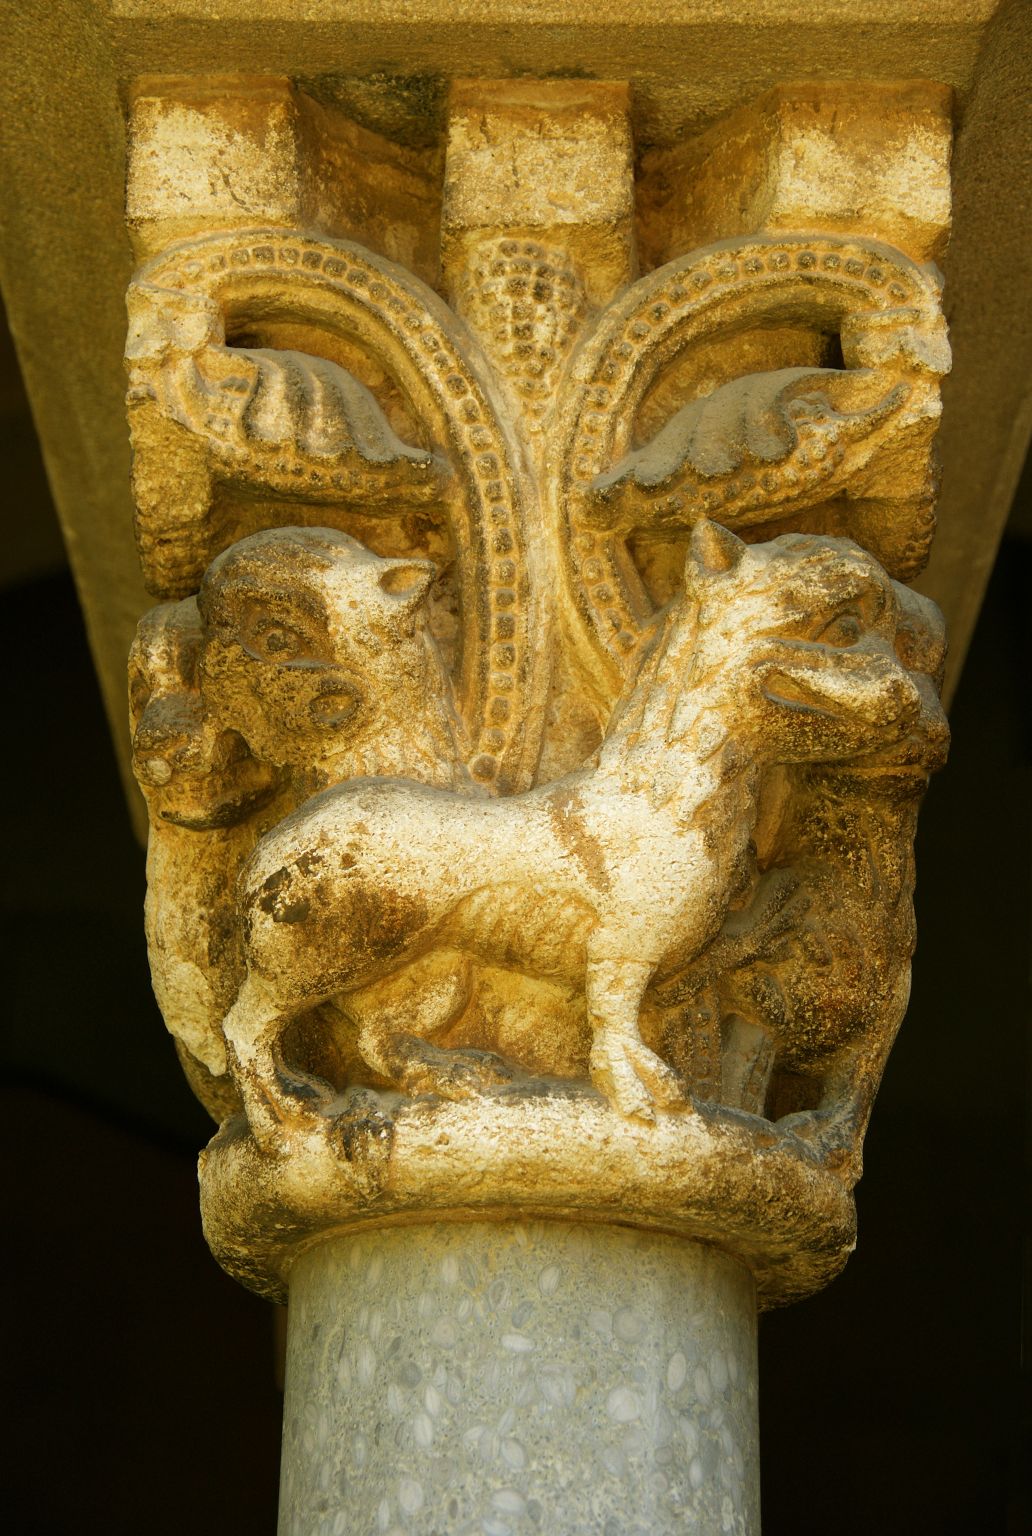 un chapiteau de style roman (monastère de Sant Cugat, Espagne)